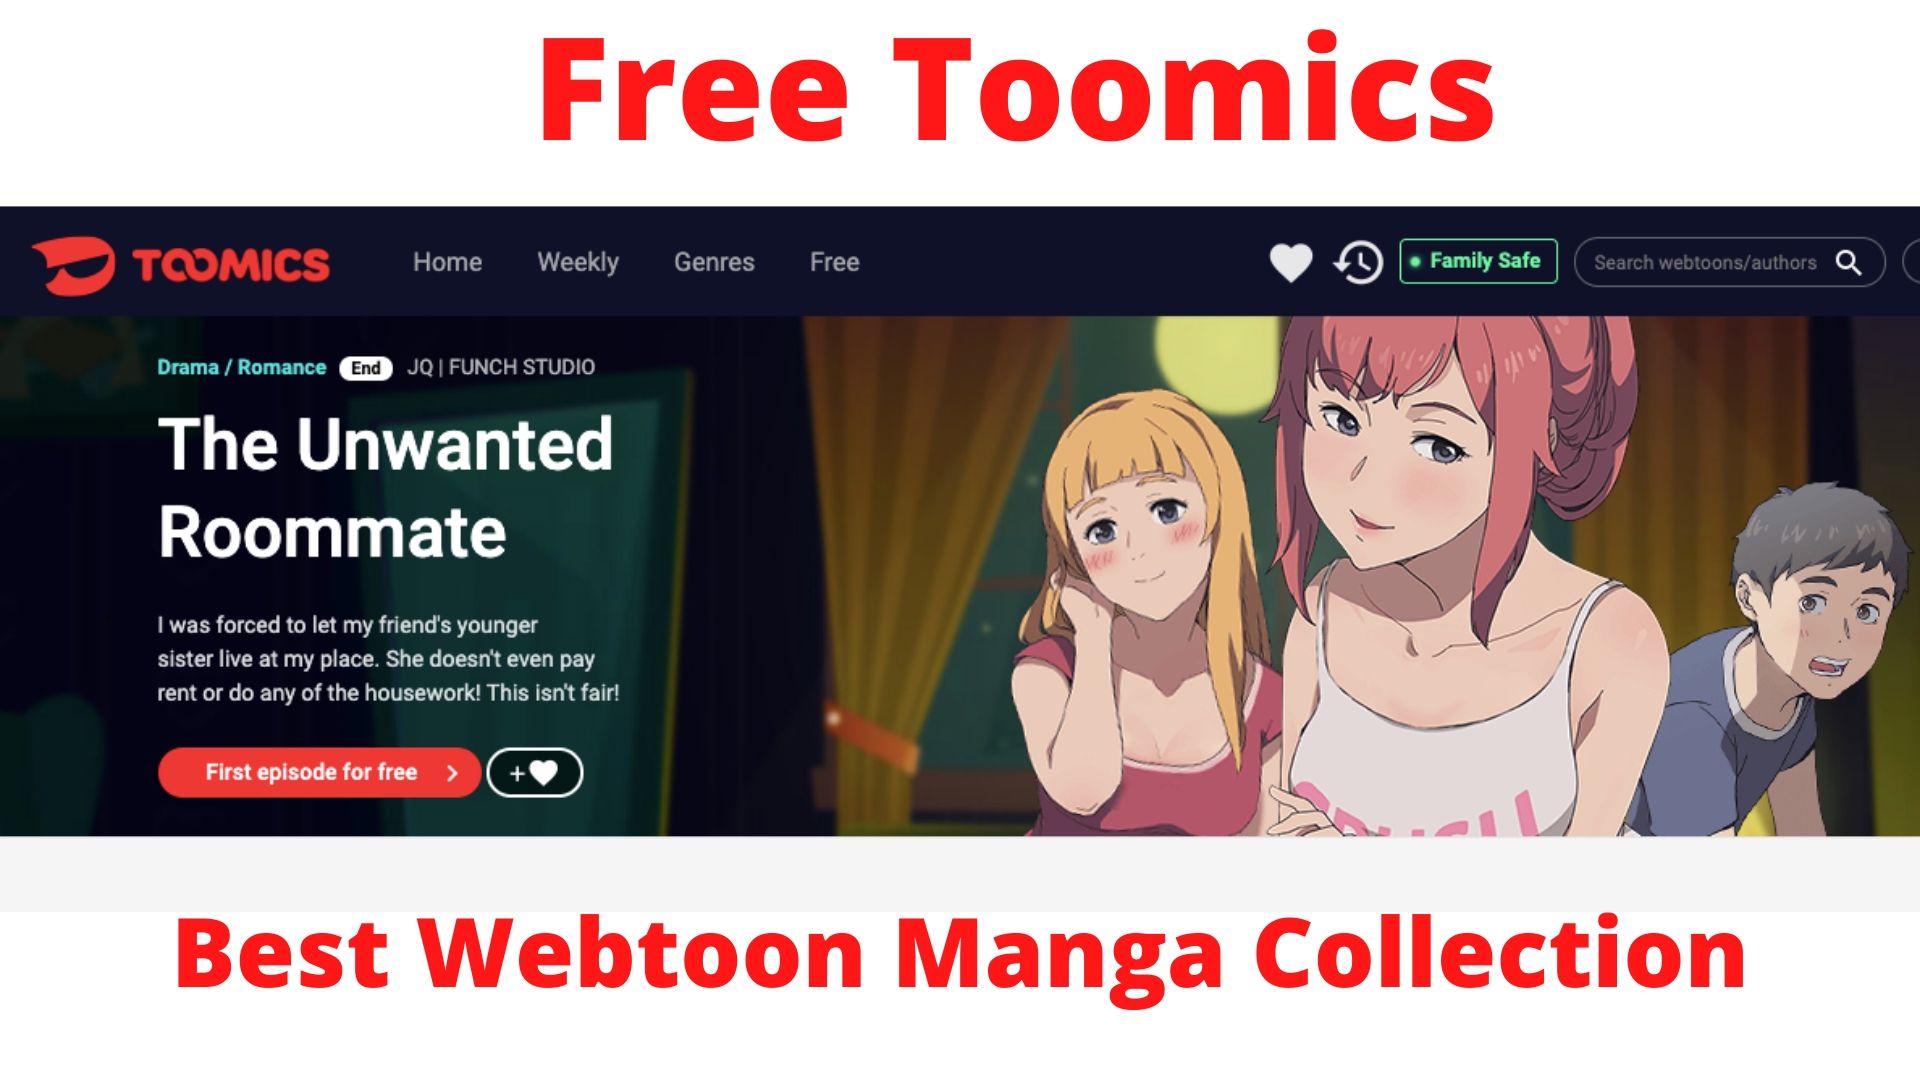 Free Toomics : Best Webtoon Manga Collection